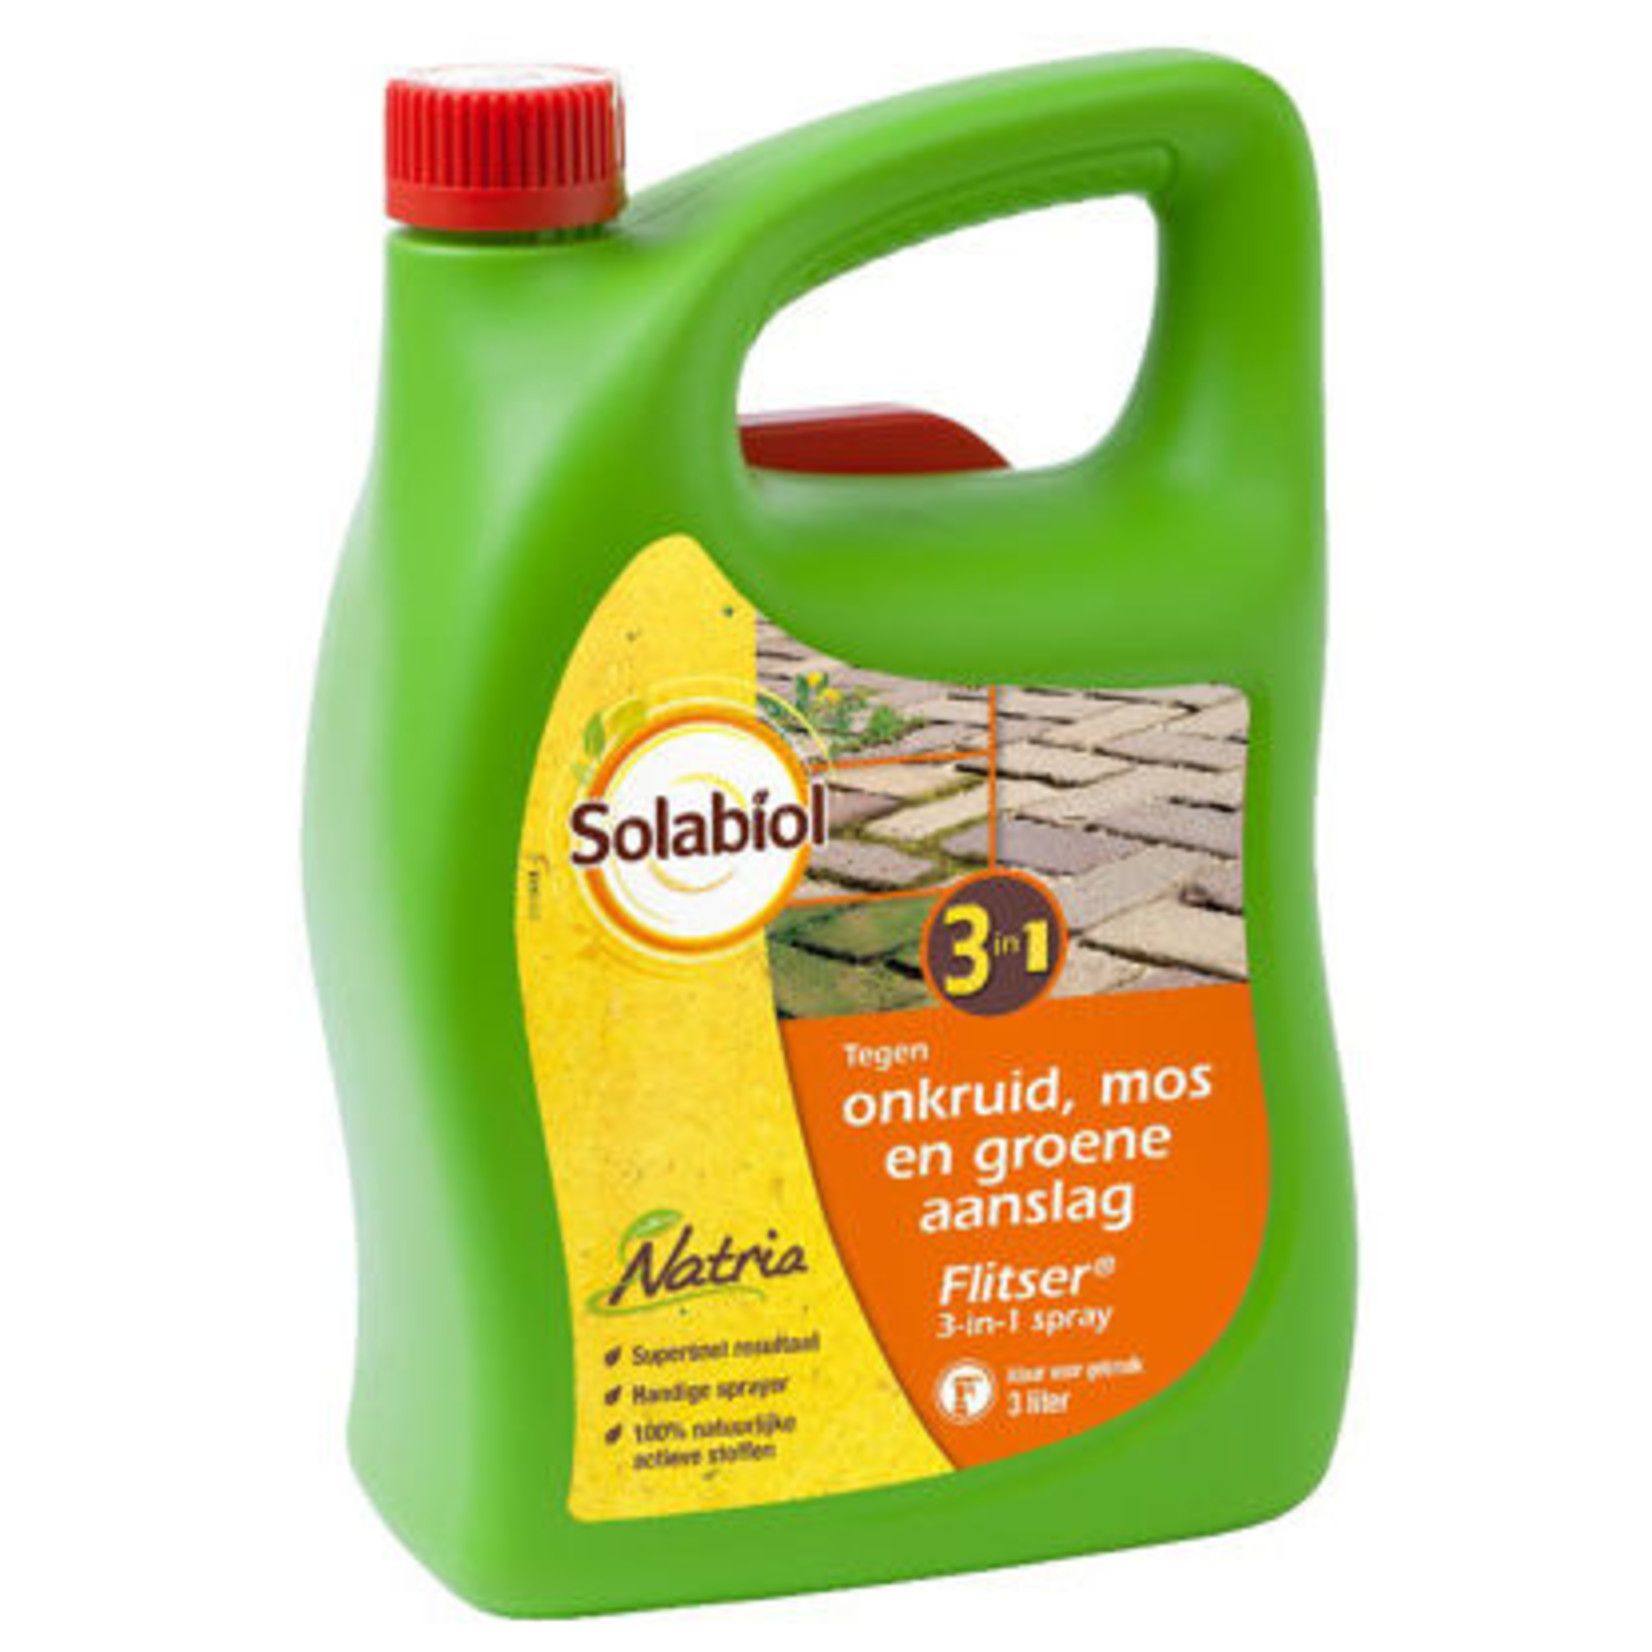 Flitser 3 in 1 Natria spray 3L -Solabiol-